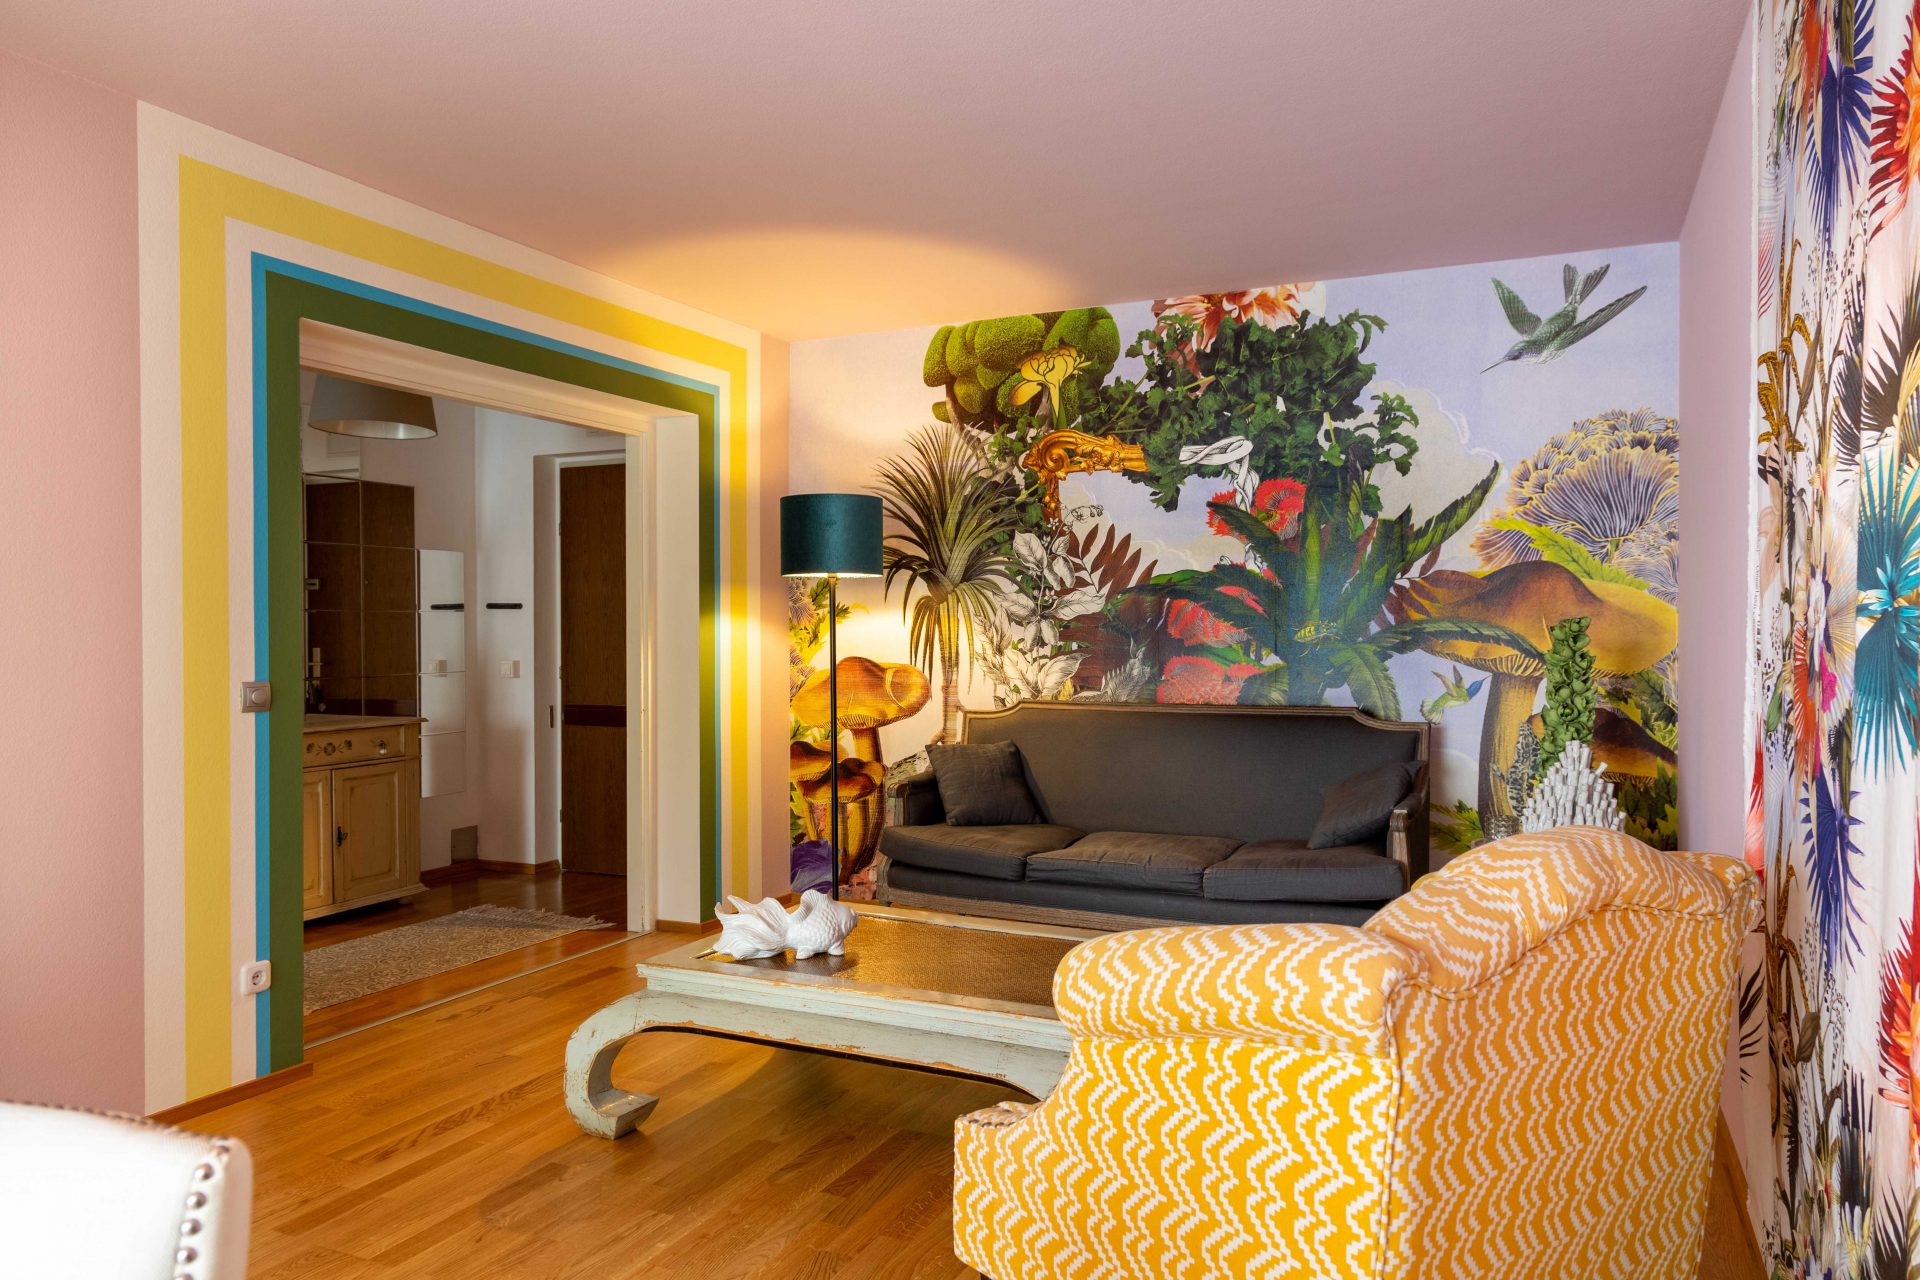 Wohnzimmer mit Lacroix-Tapete mit Pflanzen und Tieren und Lacroix-Stoffbahnen in Kombination mit verschiedenen Wandfarben und passenden Möbeln.